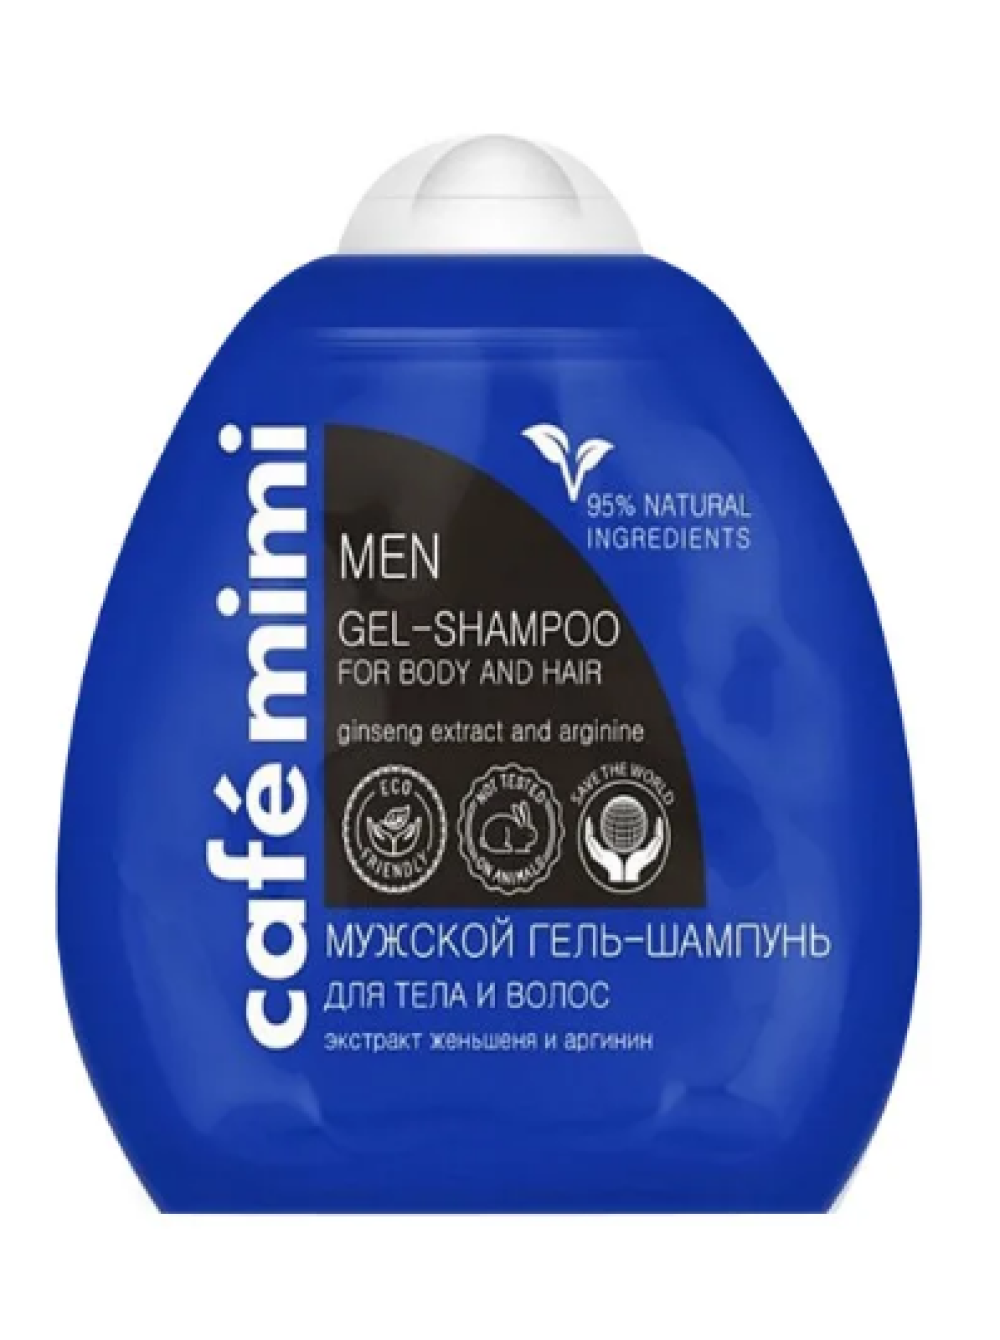 Shampoo gel